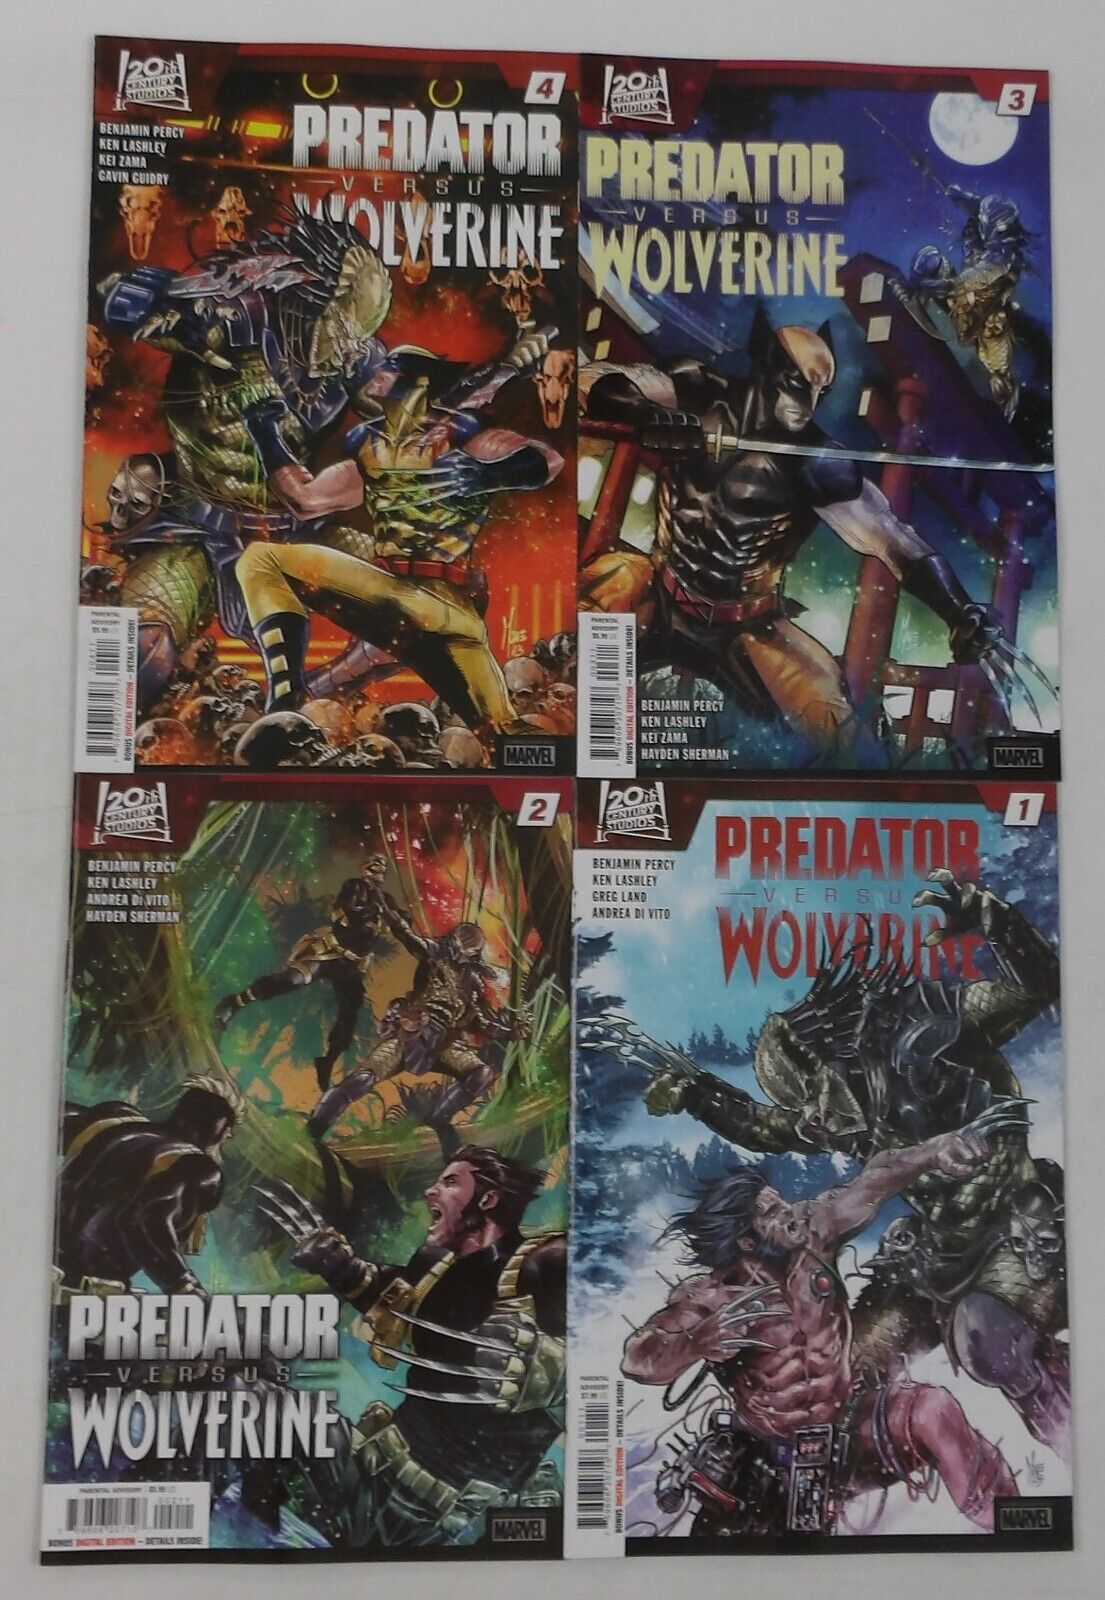 Predator versus Wolverine #1-4 VF/NM complete series Benjamin Percy Greg Land